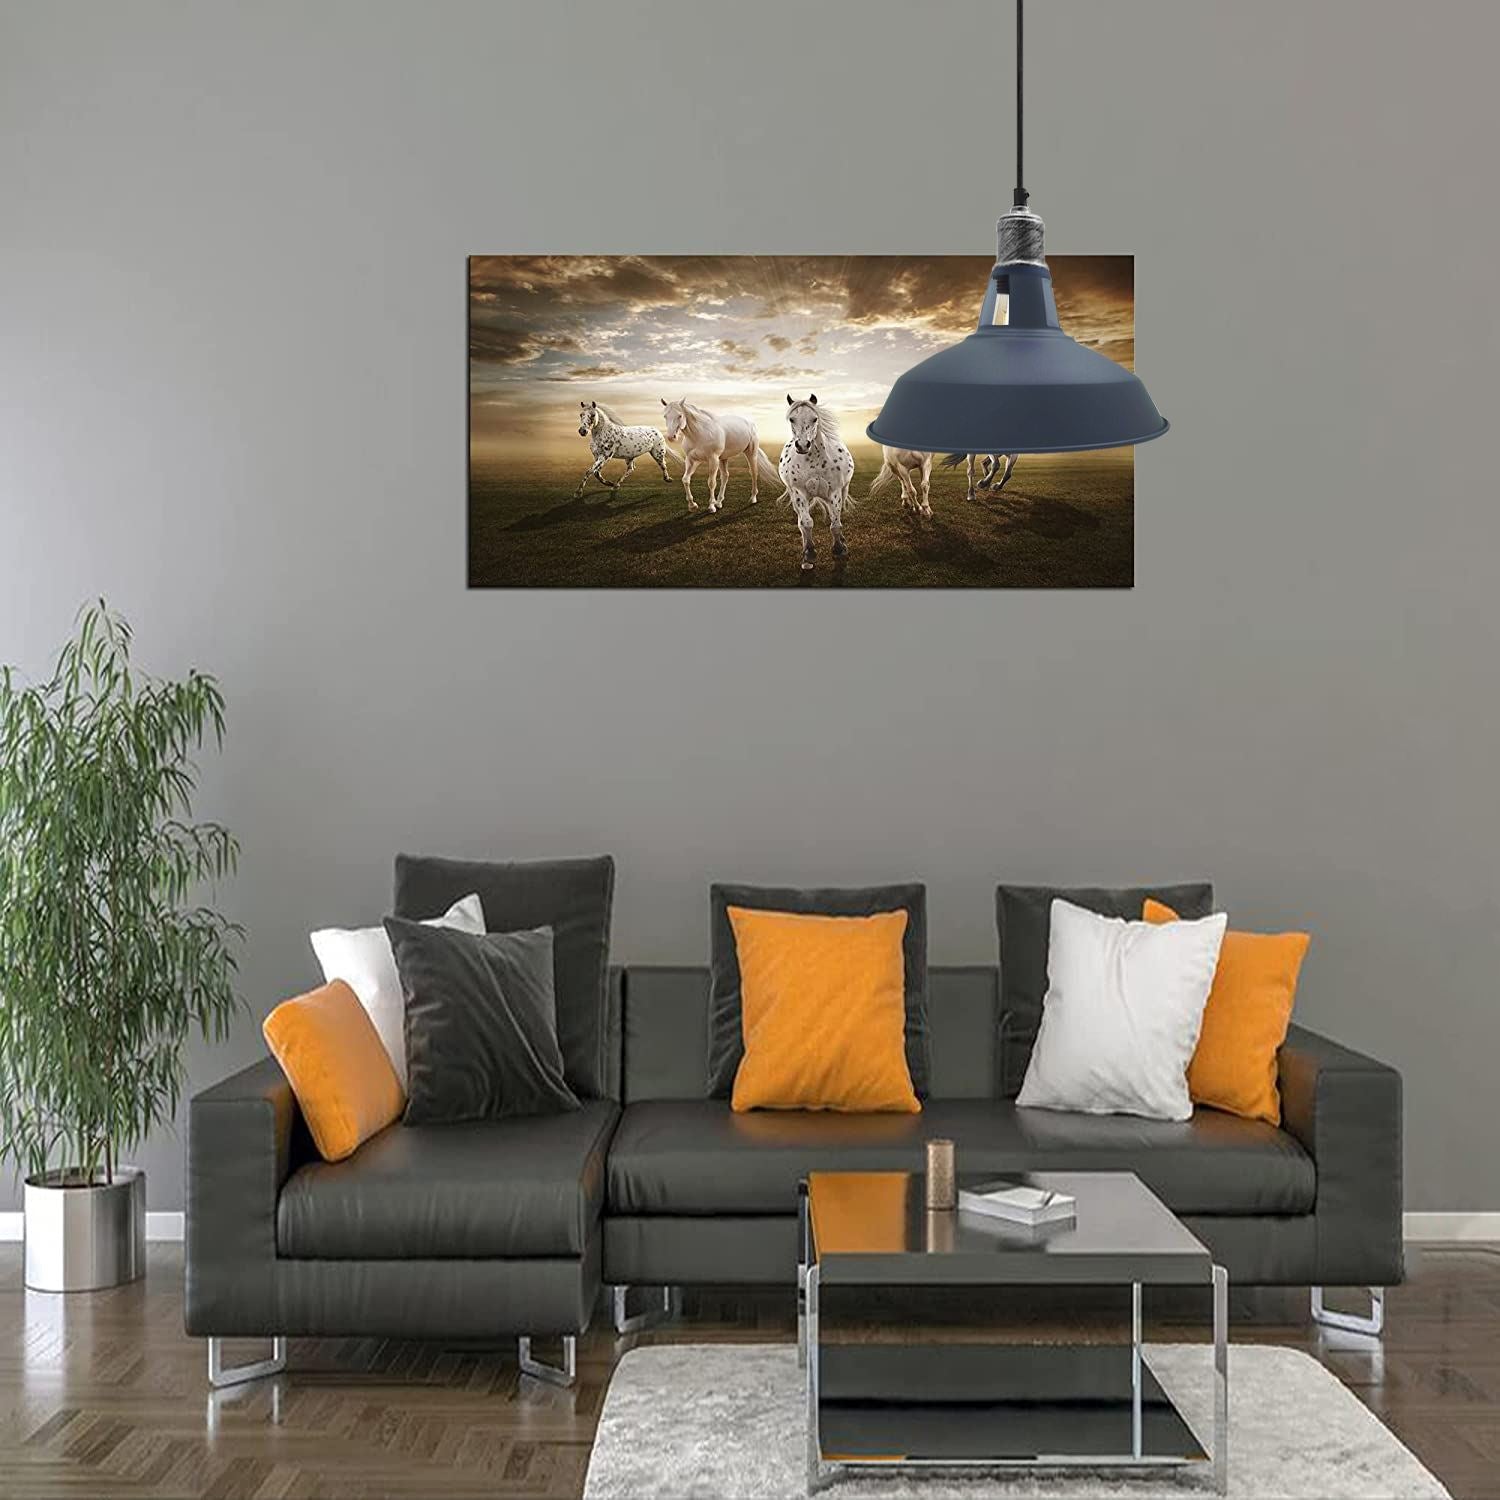 Grey Barn Style Pendant Light for living room.JPG